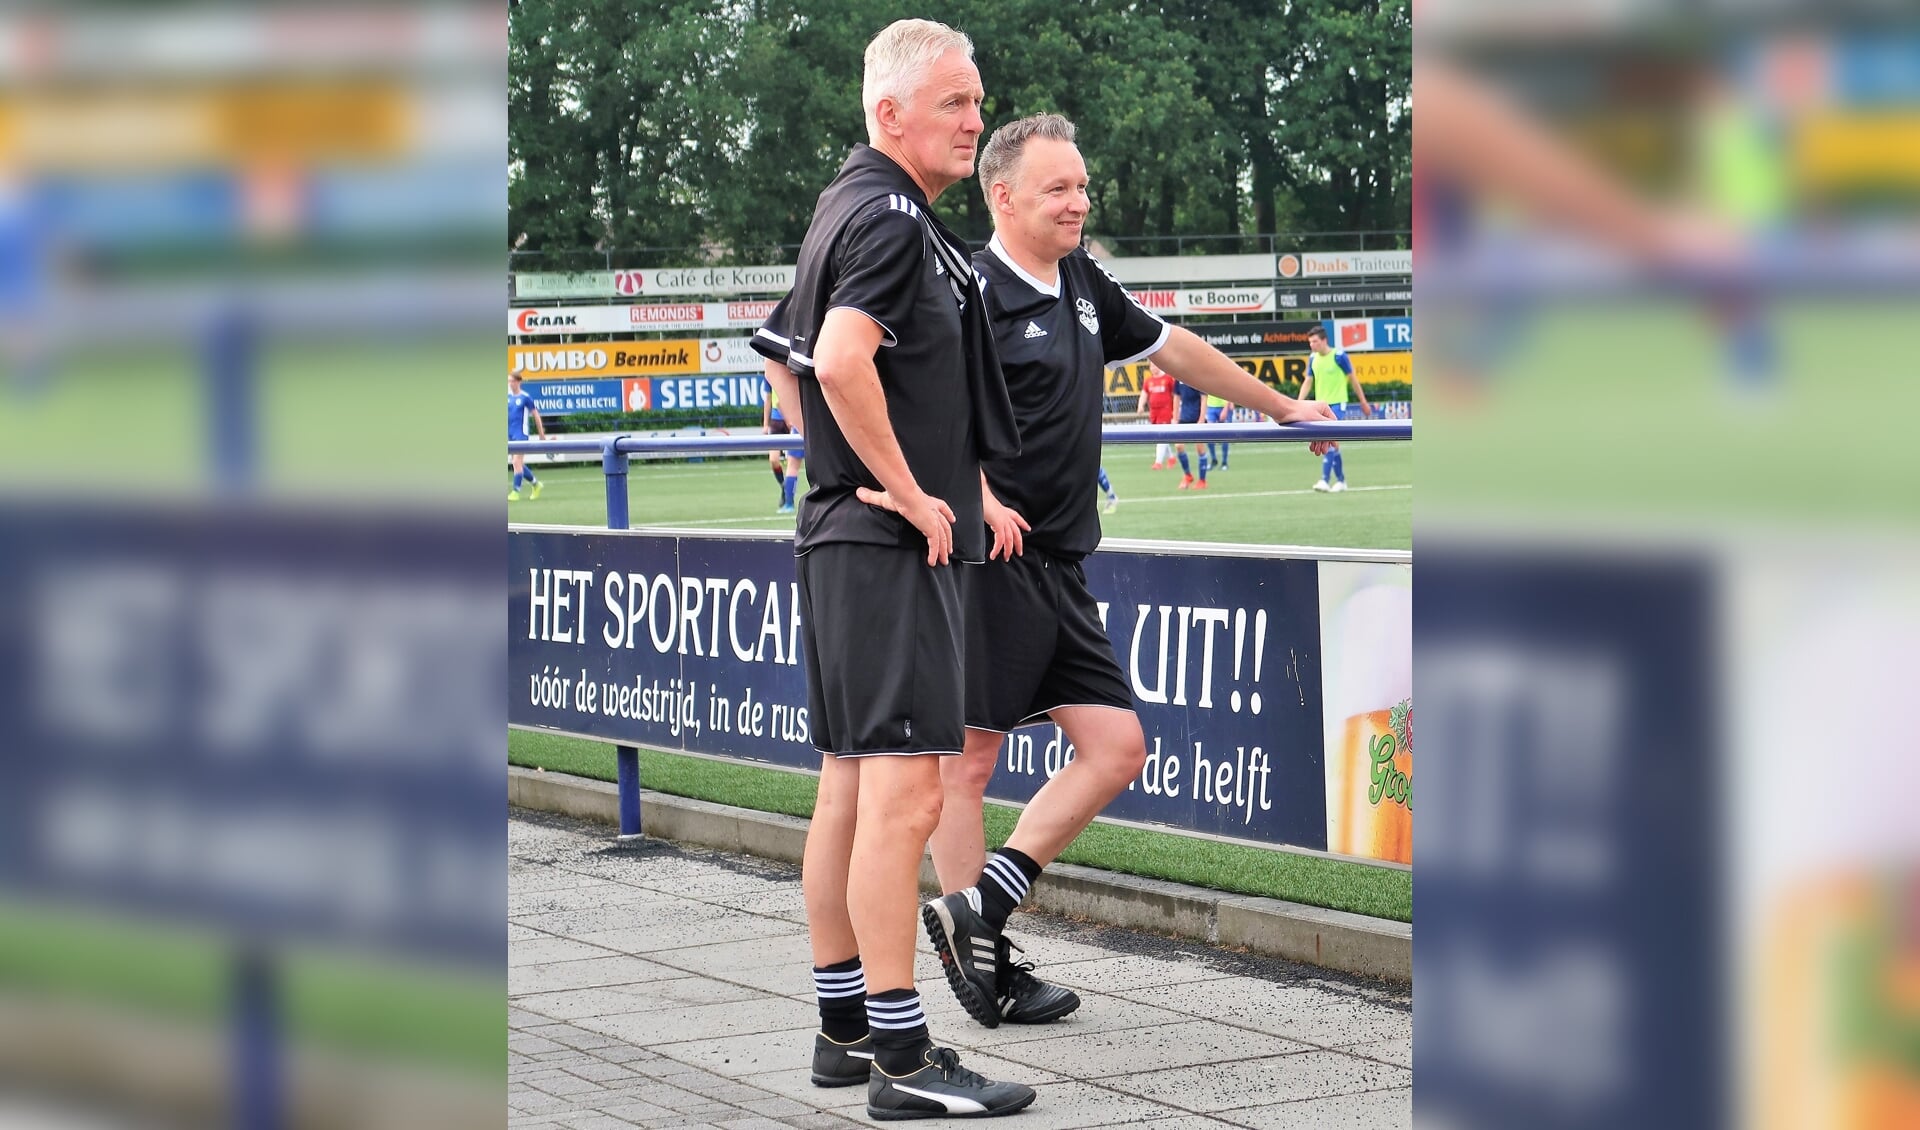 Het nieuwe trainersduo van Grol met rechts hoofdtrainer William Krabbenborg en links assistent-trainer Jos Heutinck. Foto: Theo Huijskes